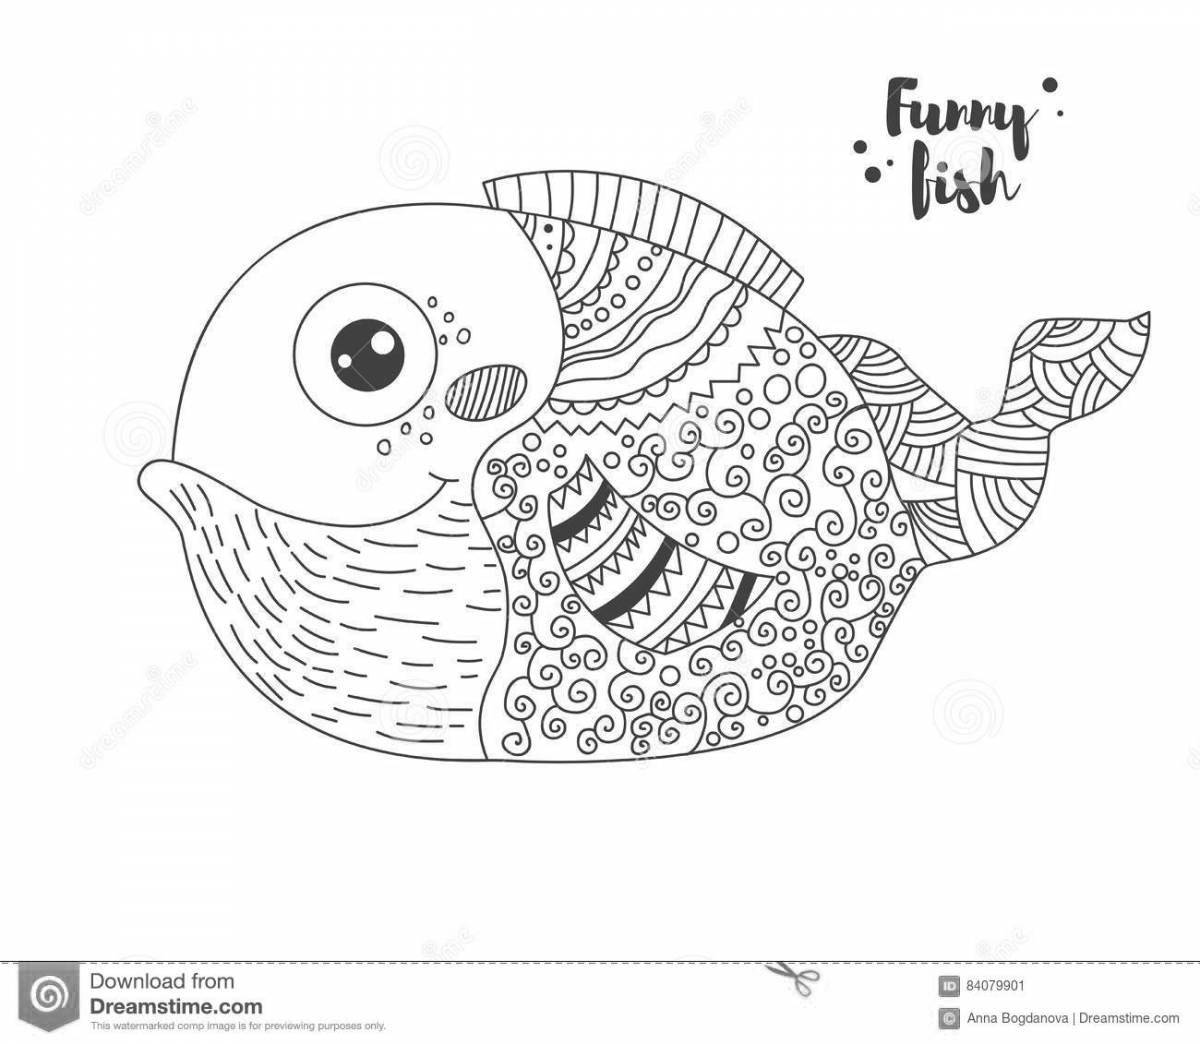 Animated mandarin fish coloring page